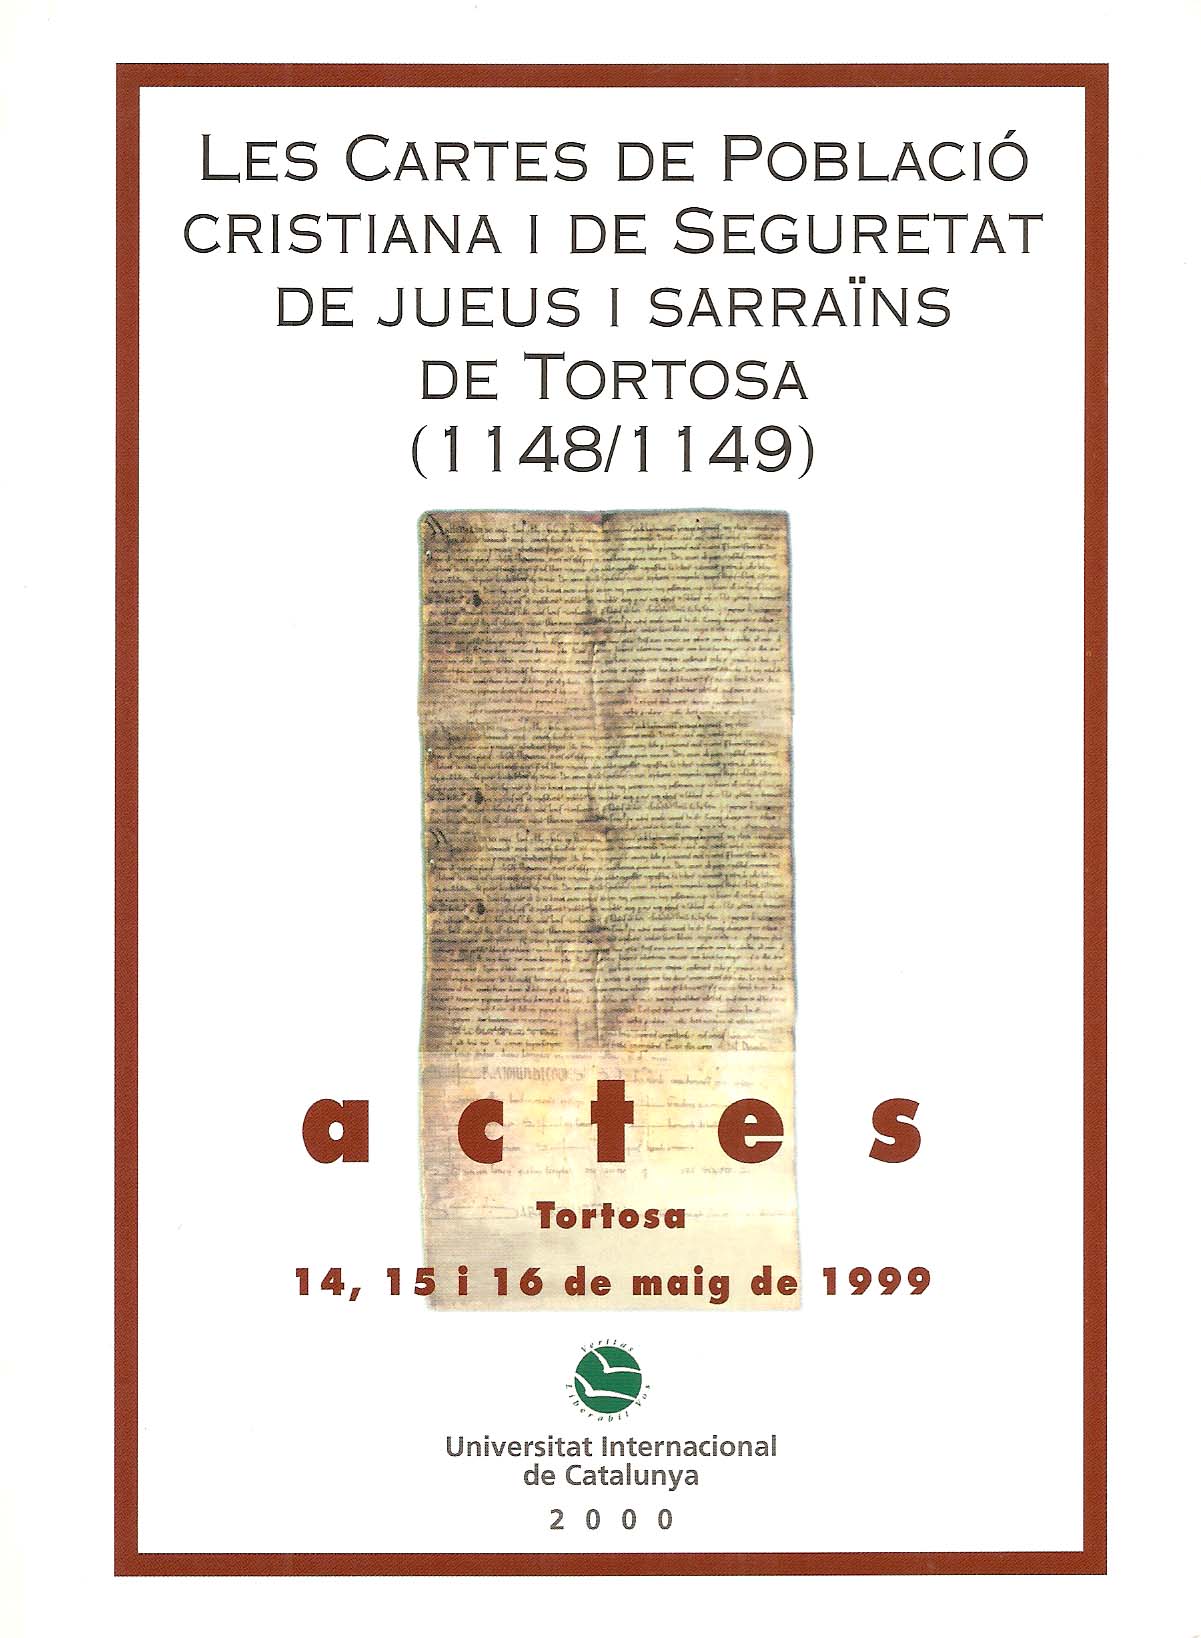 Imagen de portada del libro Les Cartes de població cristiana i de seguretat de jueus i sarraïns de Tortosa (1148-1149)